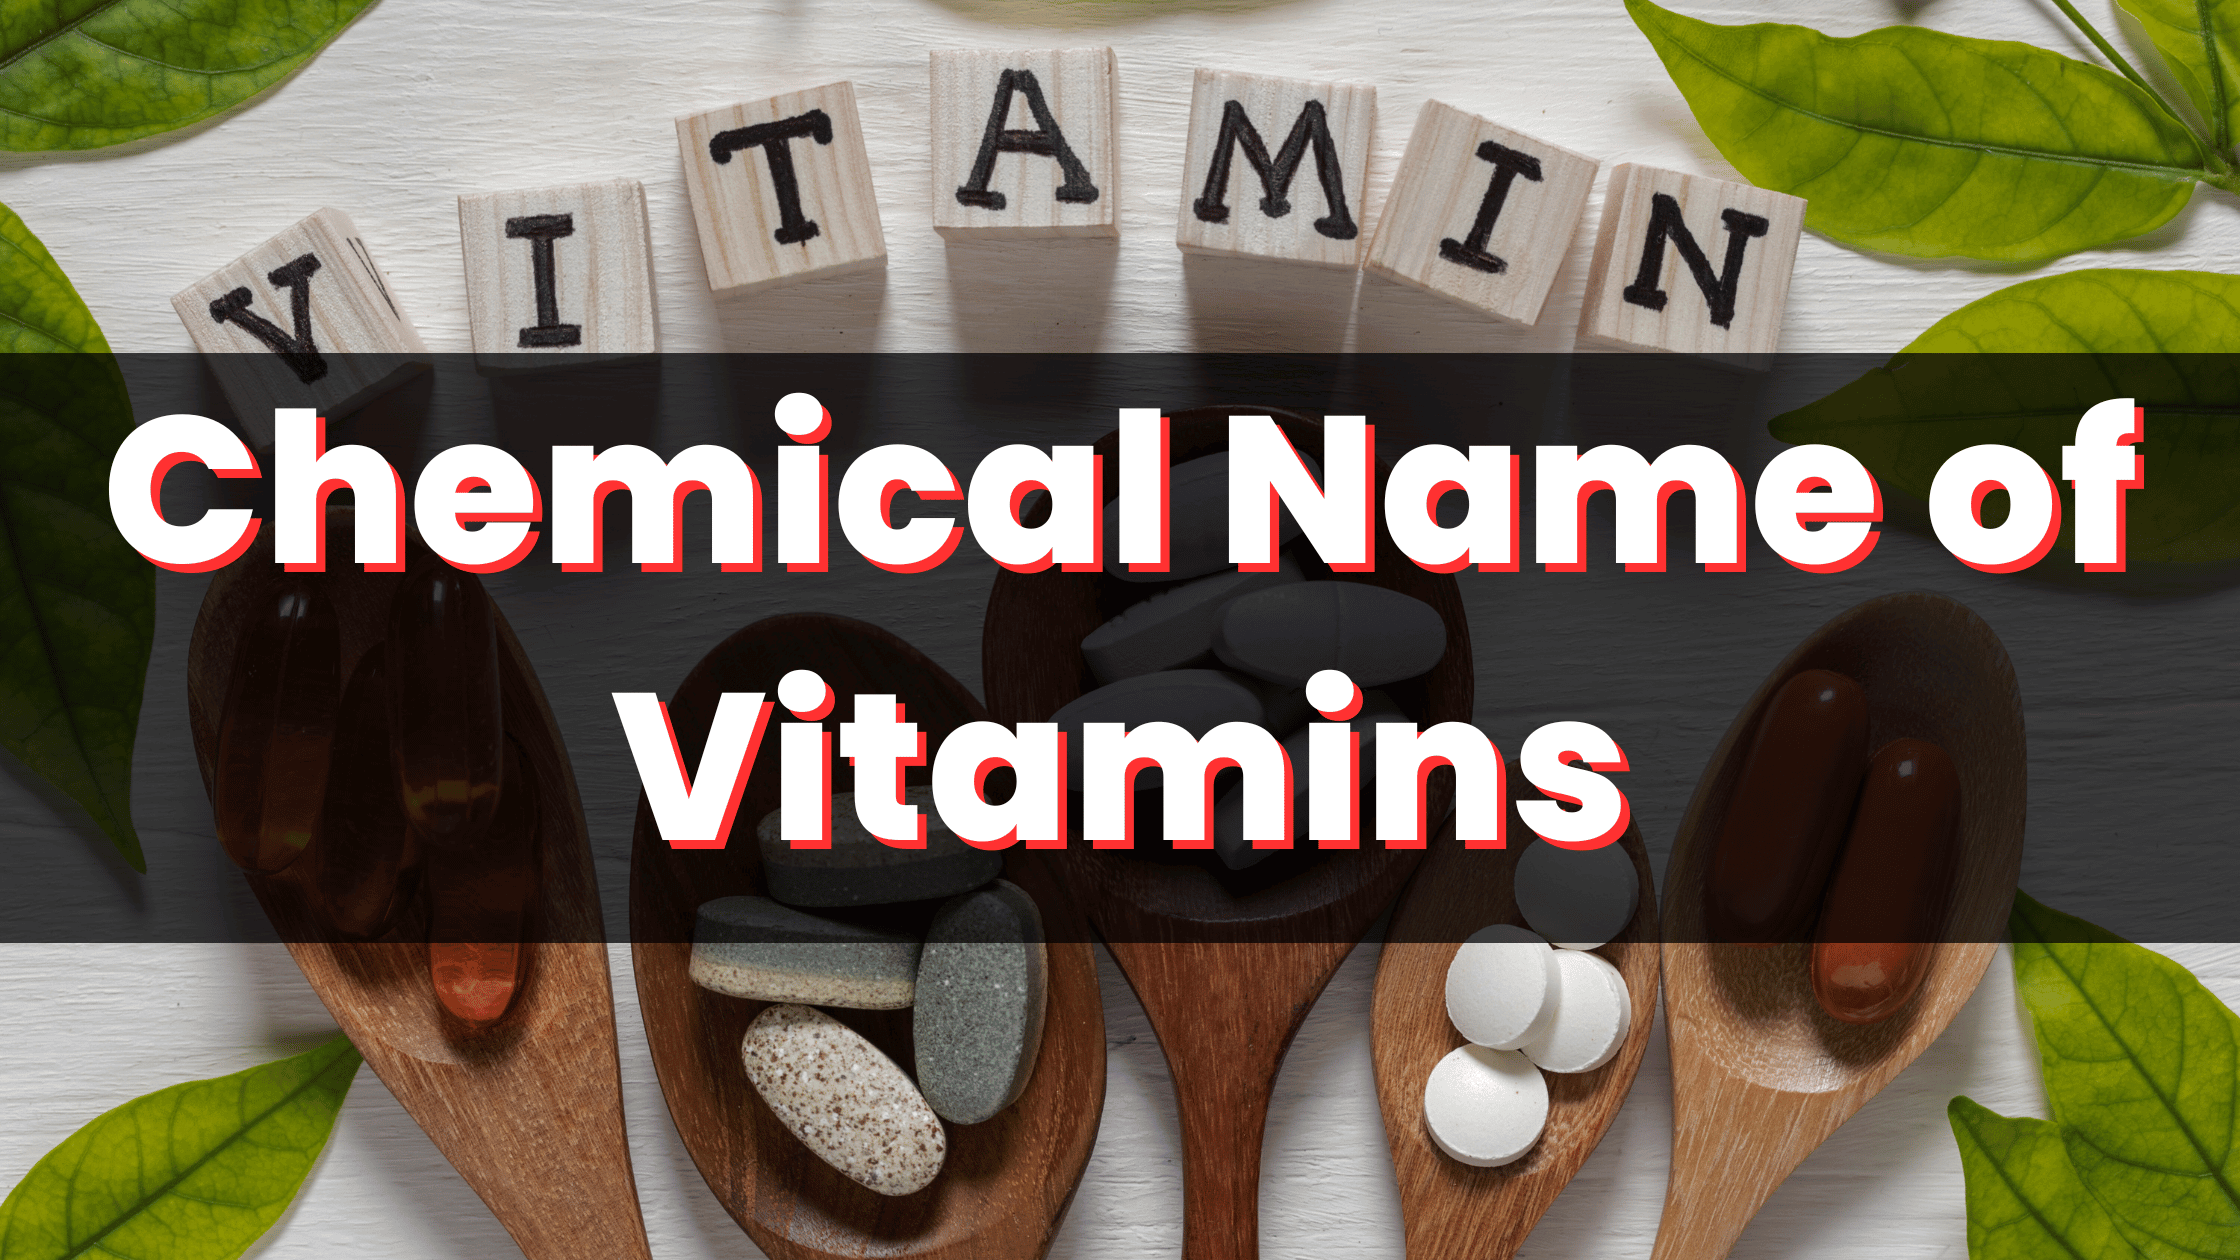 Chemical Name of Vitamins